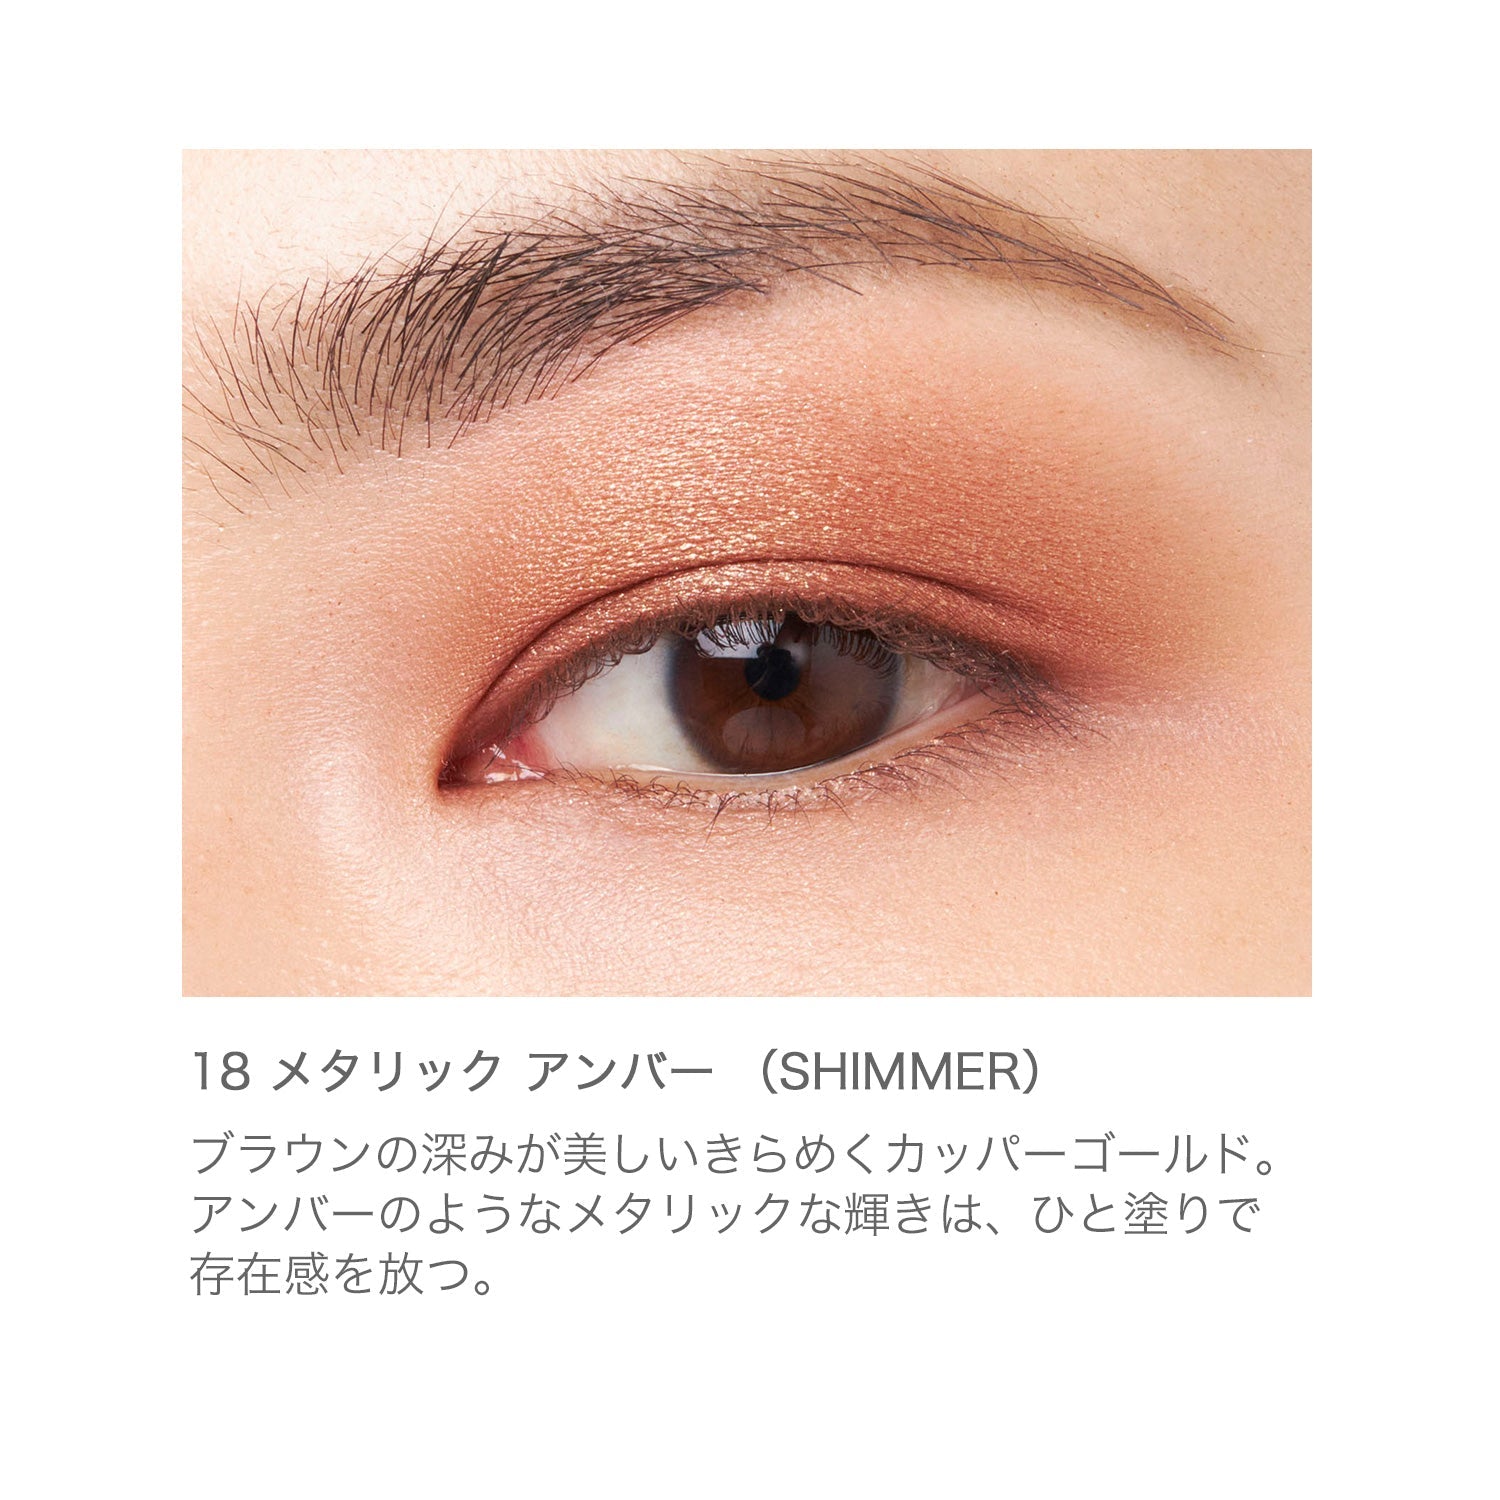 RMK Infinite Single Eyes - Ichiban Mart